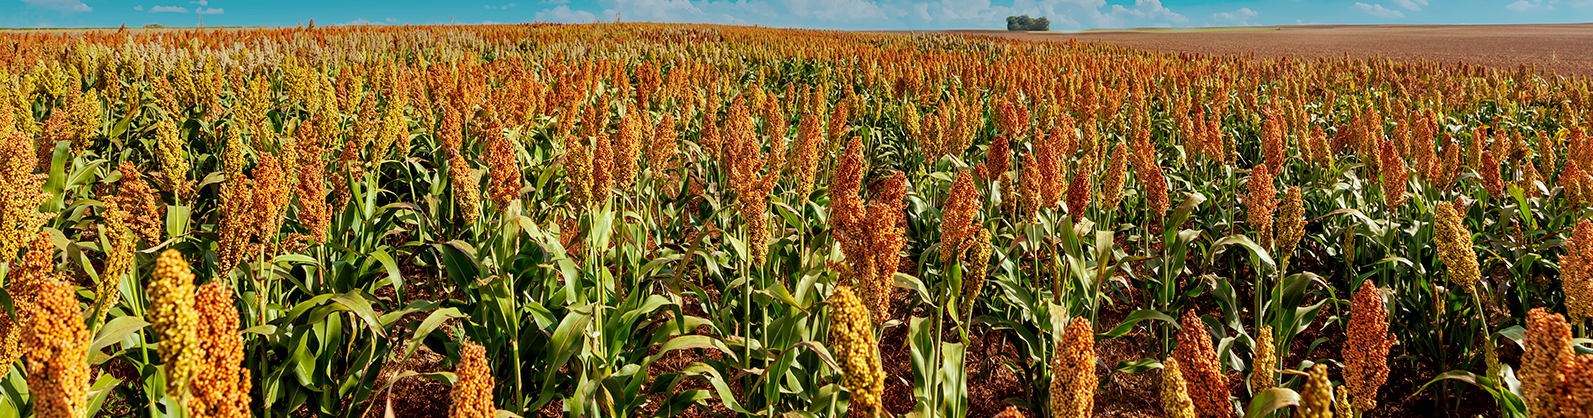 Diante da seca, produtor investe no cultivo de sorgo para manter rentabilidade